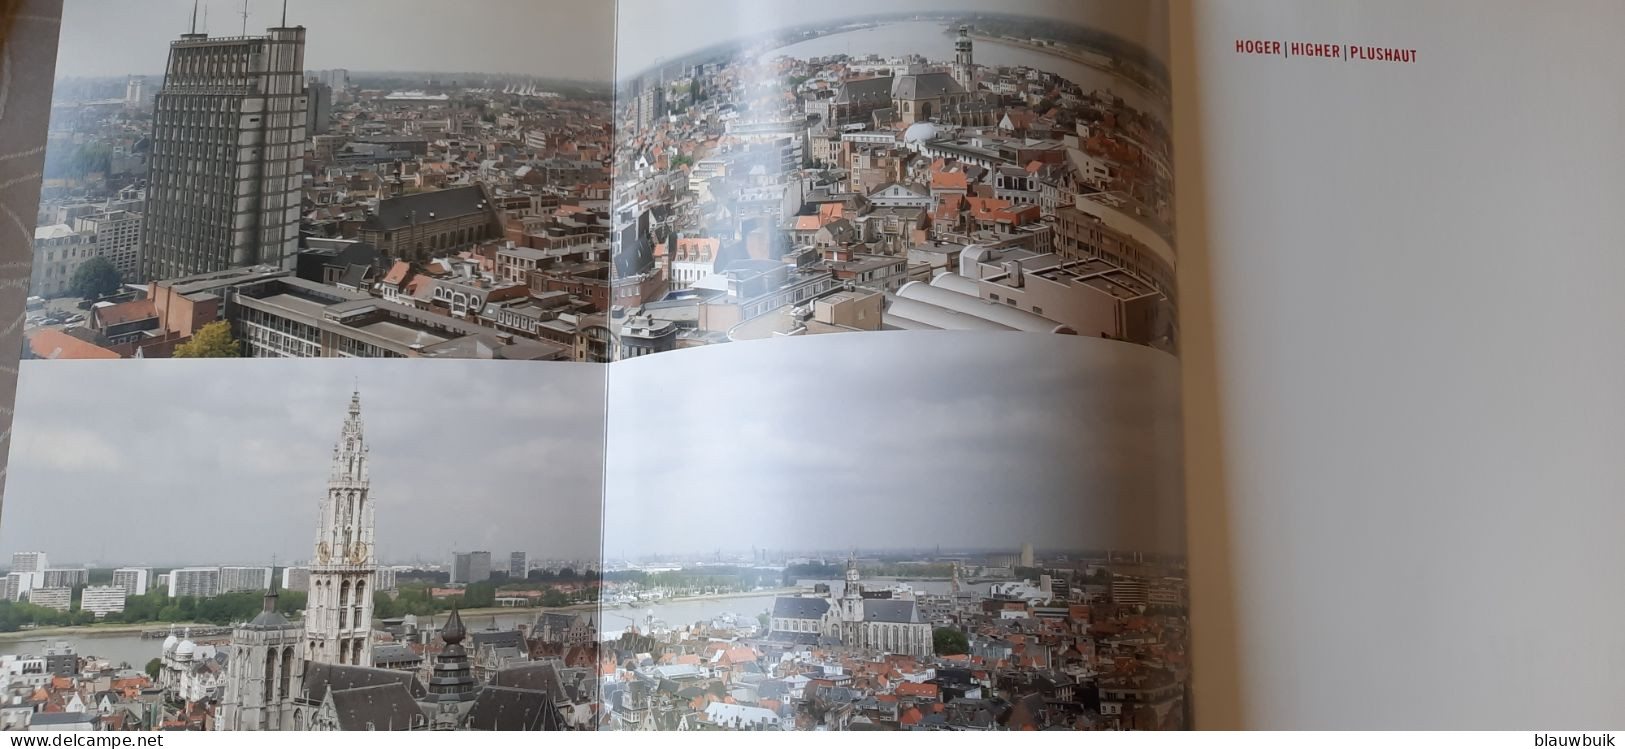 Panoramisch Antwerpen Hoger / Higher / Plus Haut - Vita Quotidiana